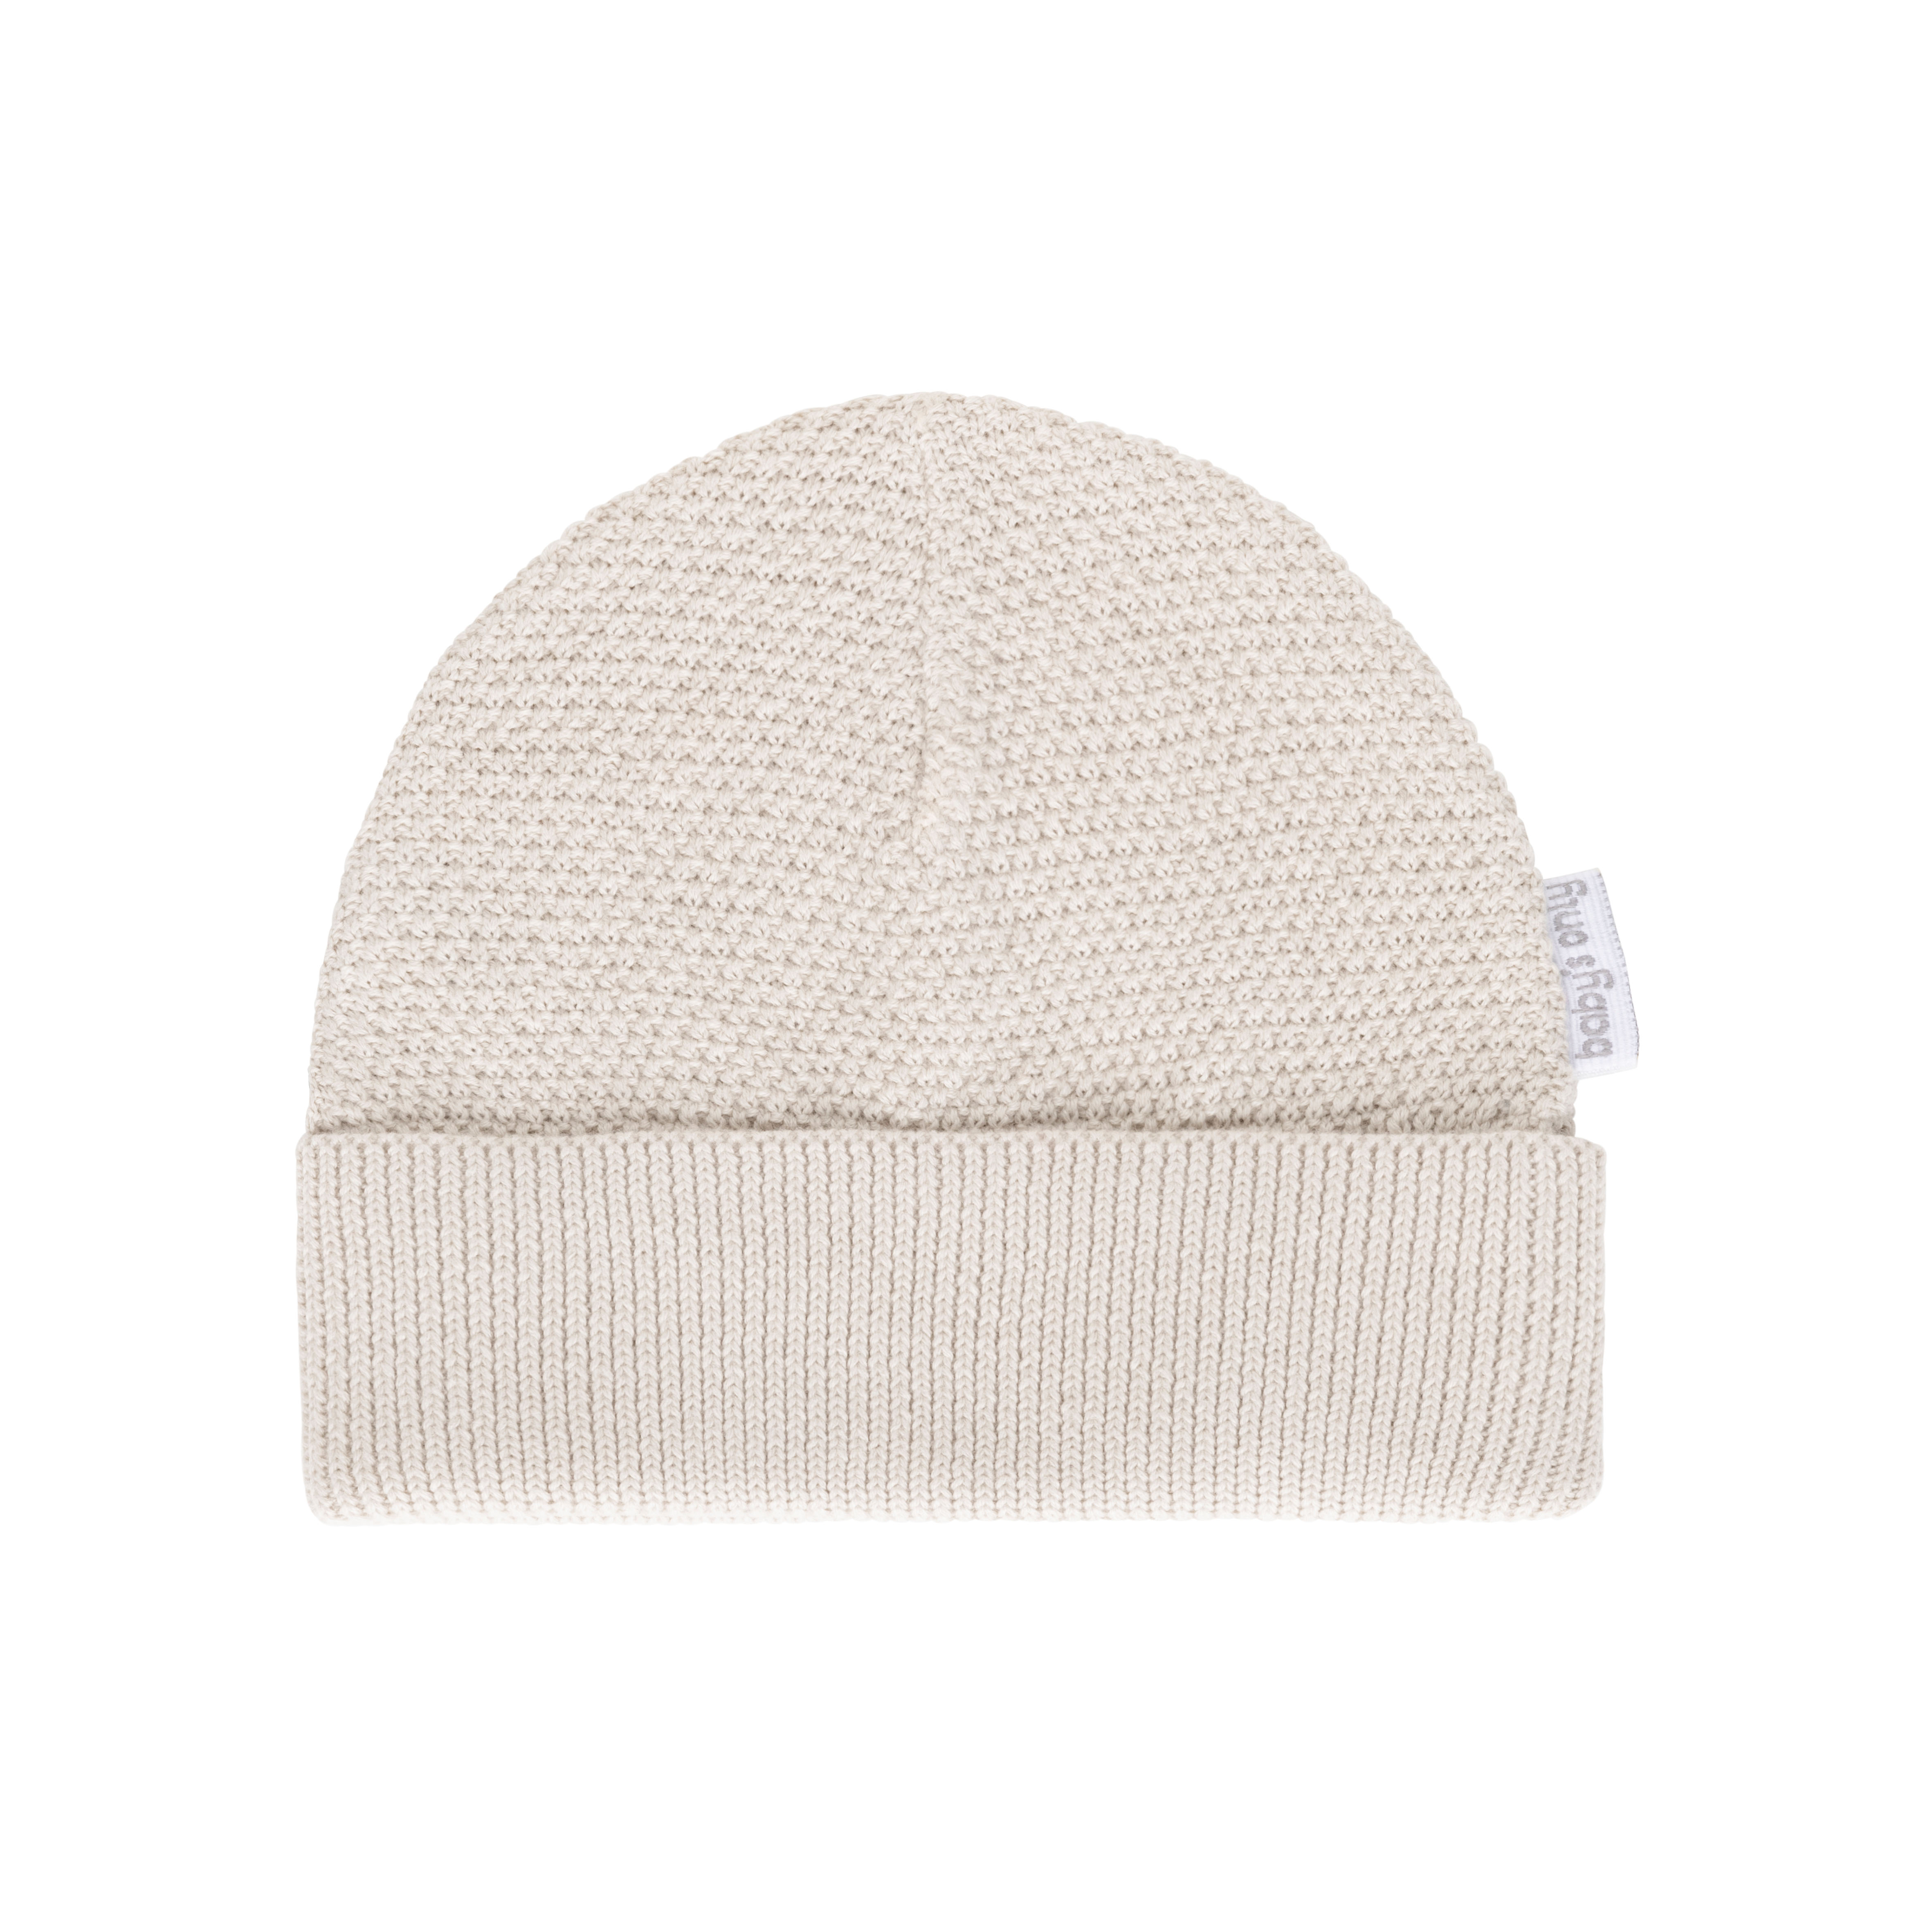 Hat Willow warm linen - 6-12 months